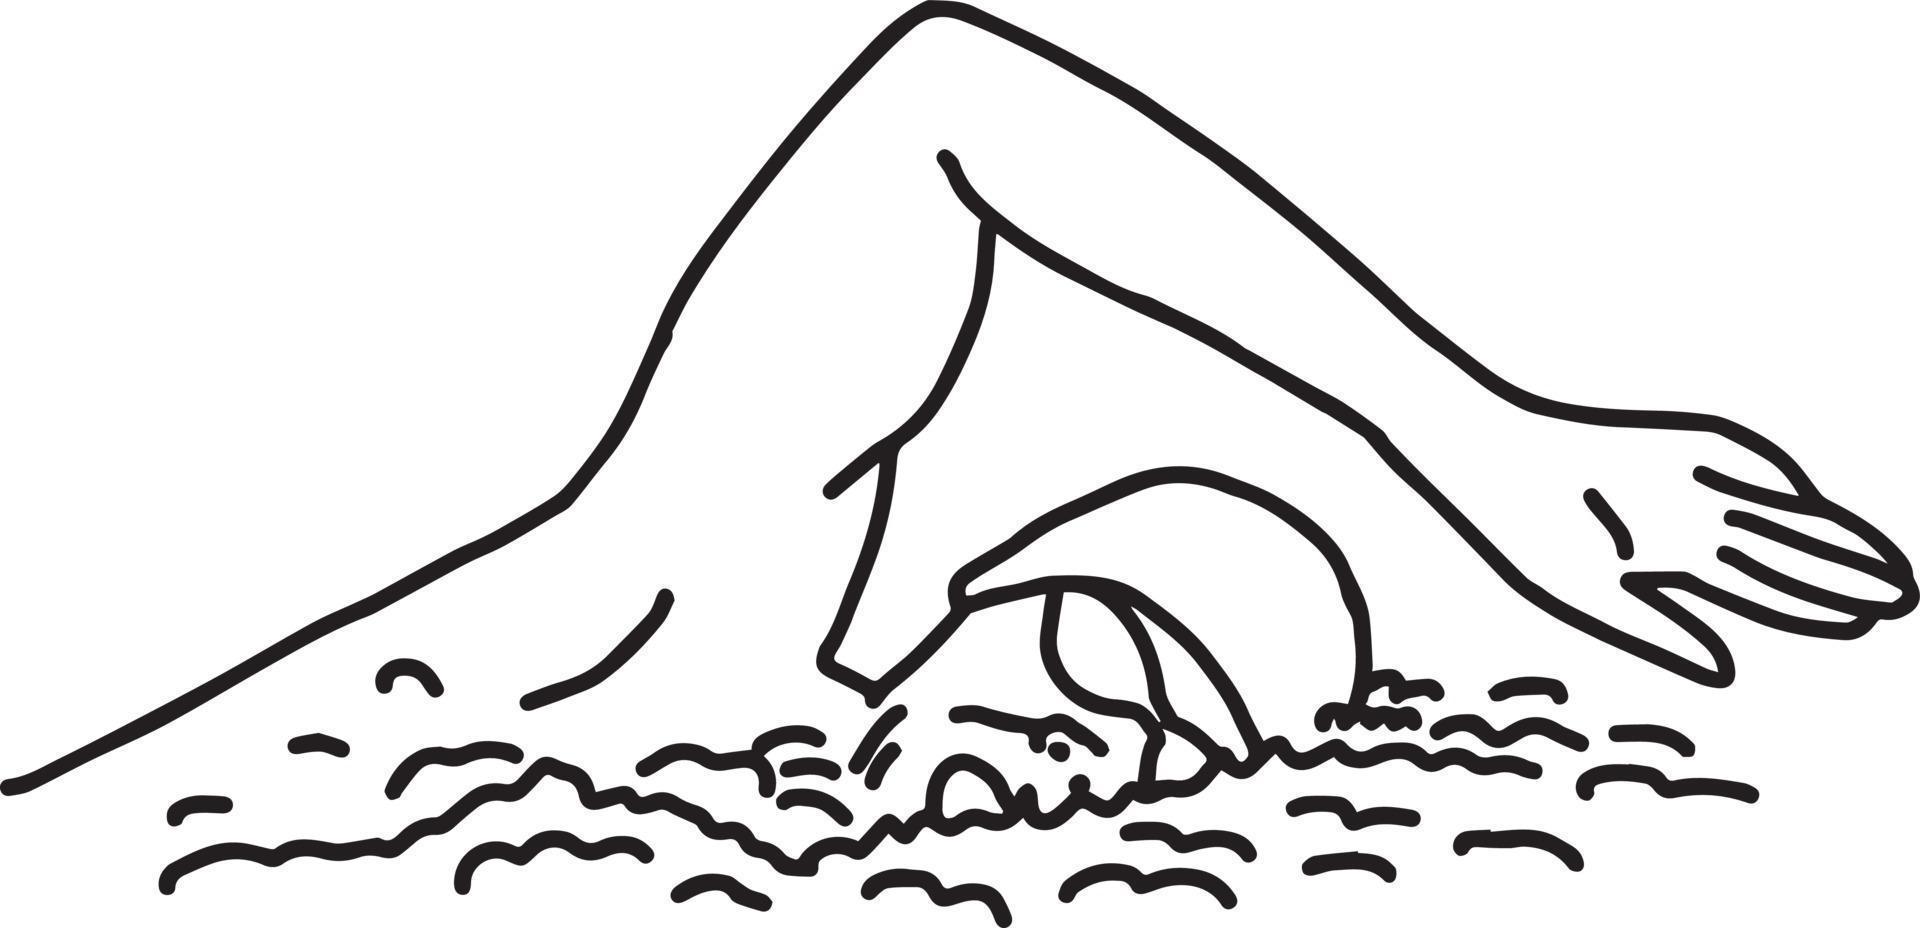 nageur - illustration vectorielle croquis dessinés à la main vecteur